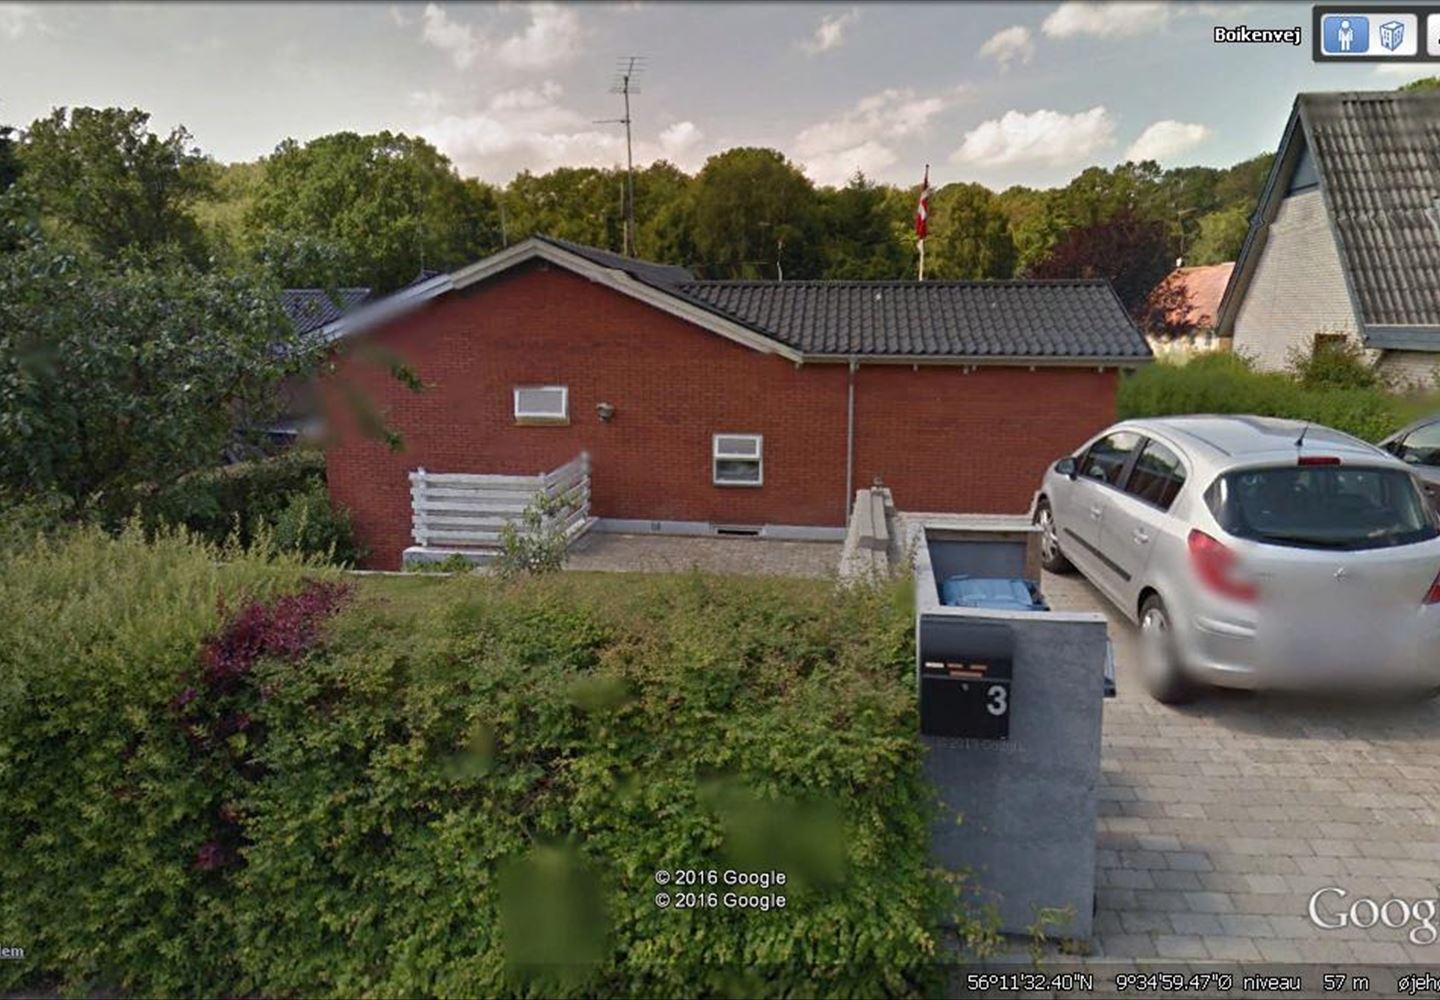 Boikenvej 3, 8600 Silkeborg